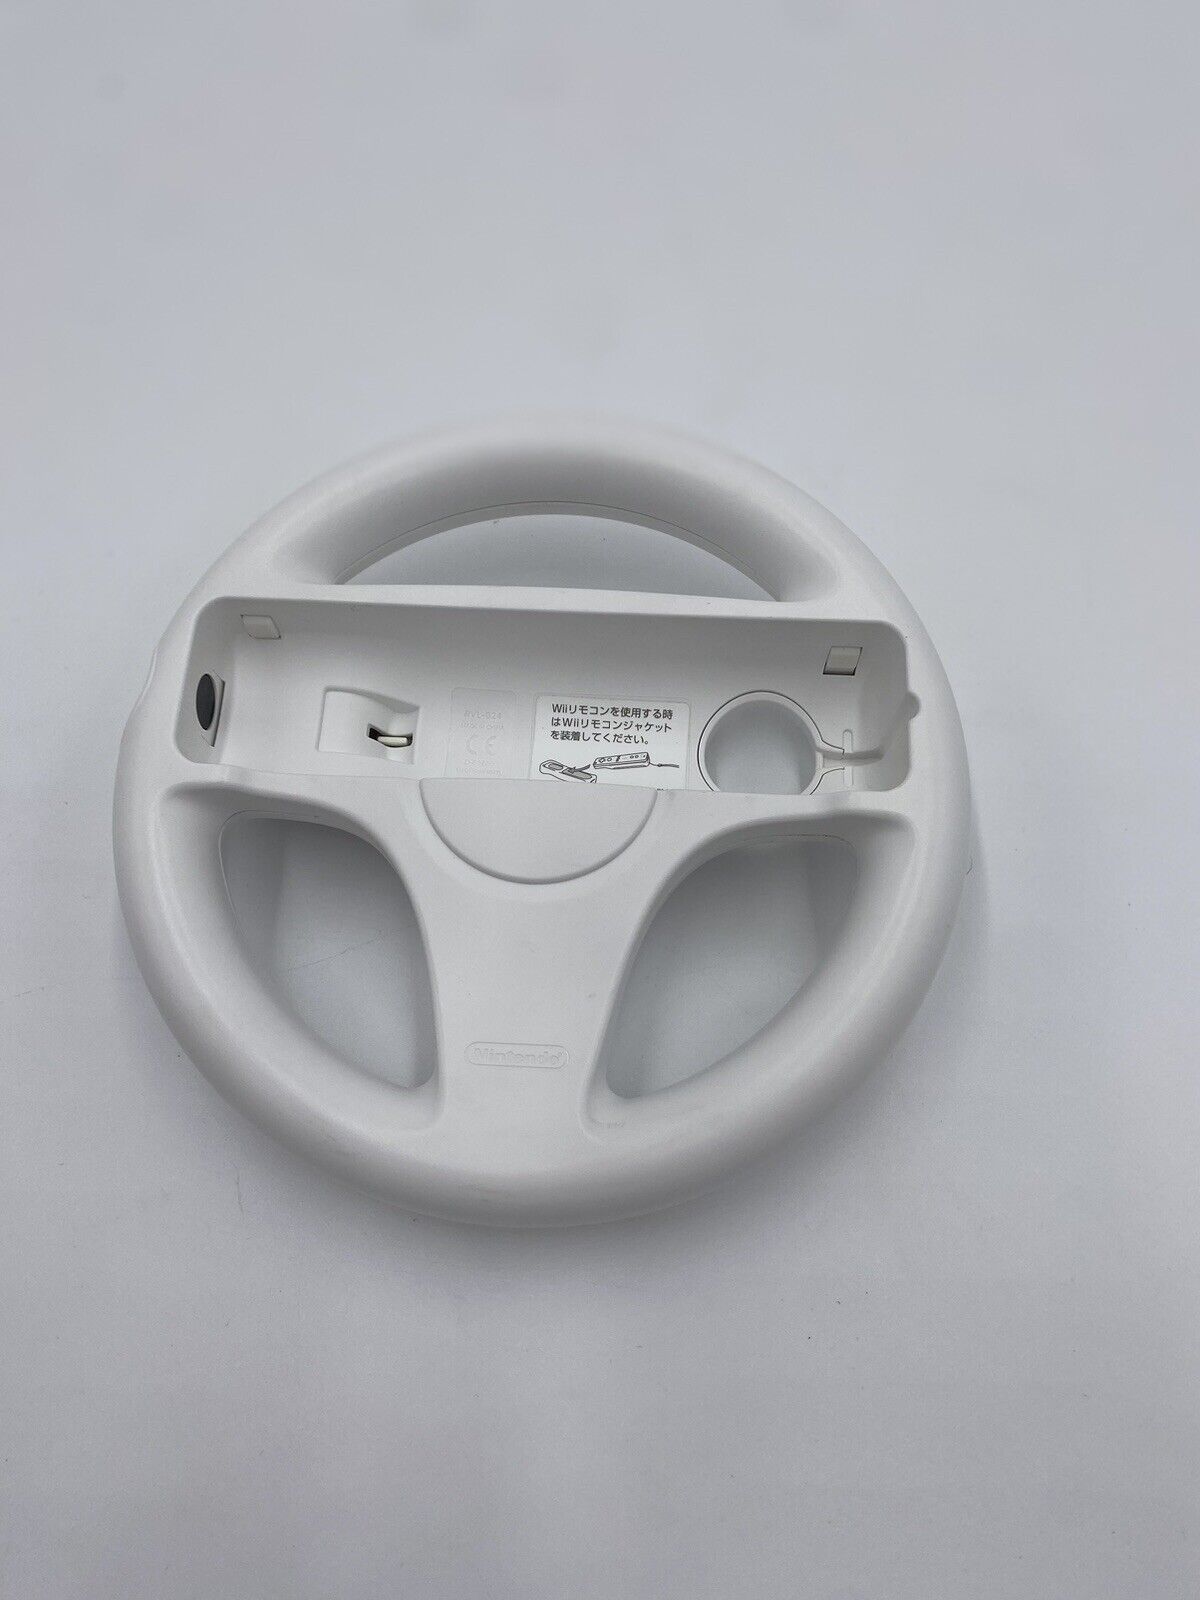 Official OEM Nintendo Mario Kart Steering Wheel for Wii & Wii U White